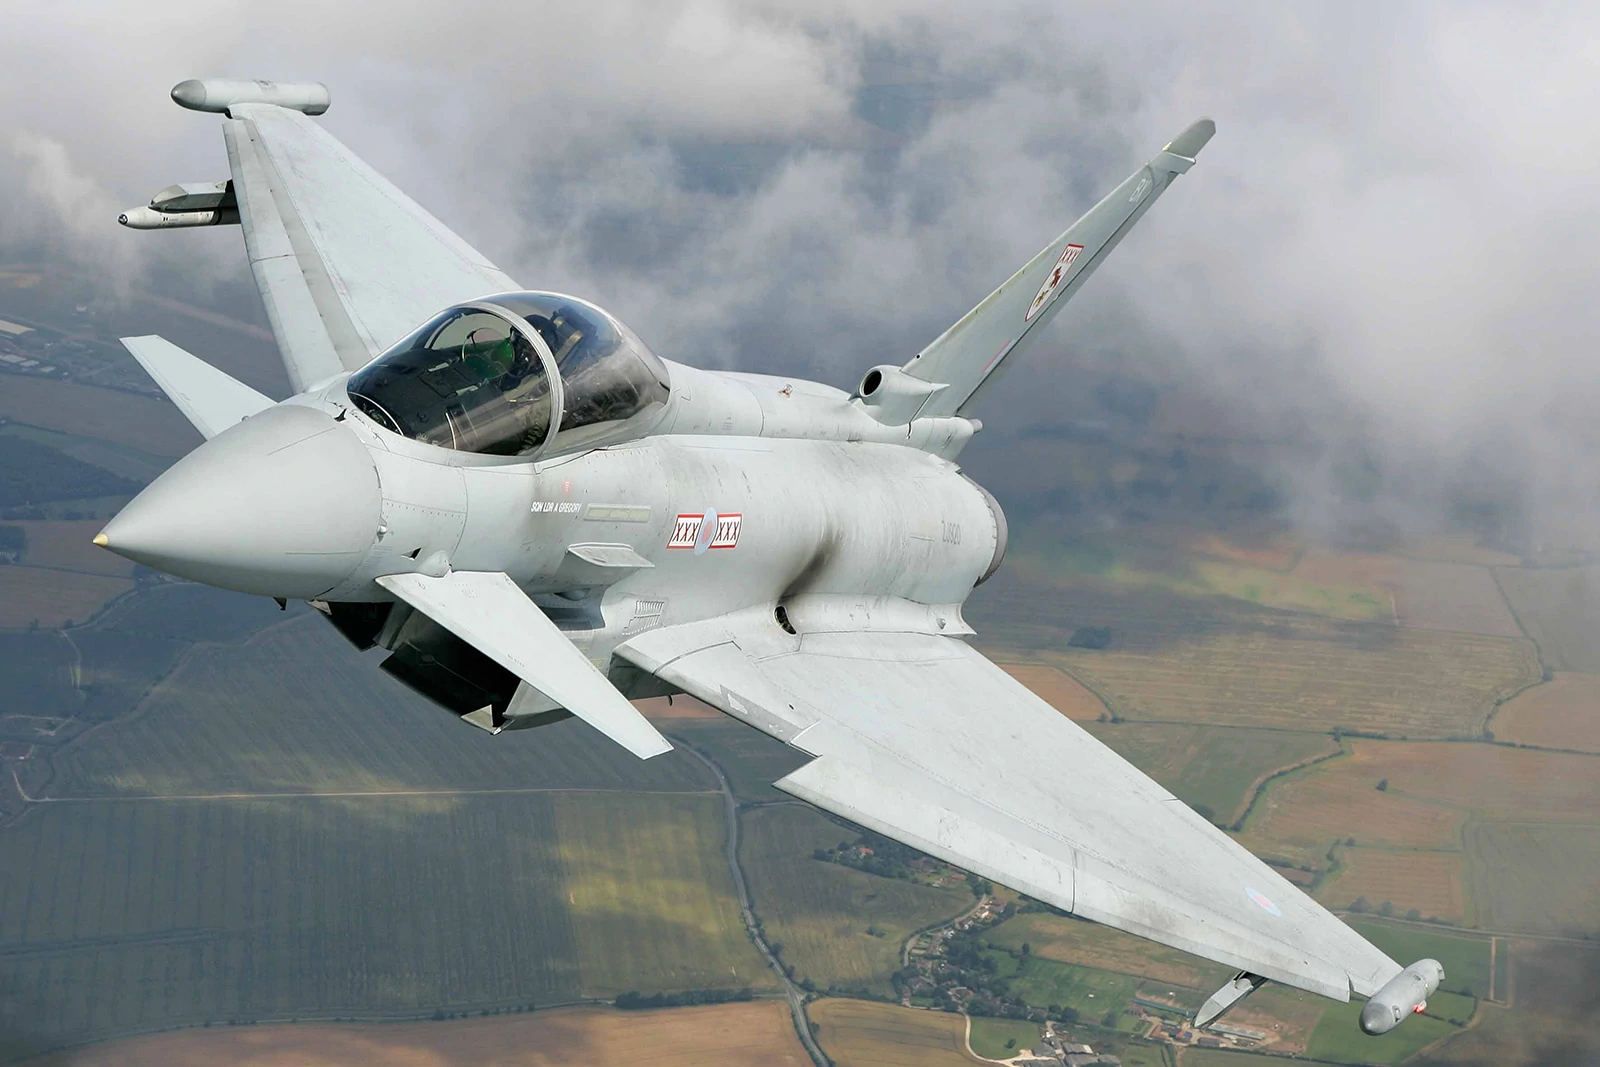 Τουρκία: Κοντά σε συμφωνία με την Βρετανία για αγορά 48 Eurofighter Typhoon και φρεγατών Type 23